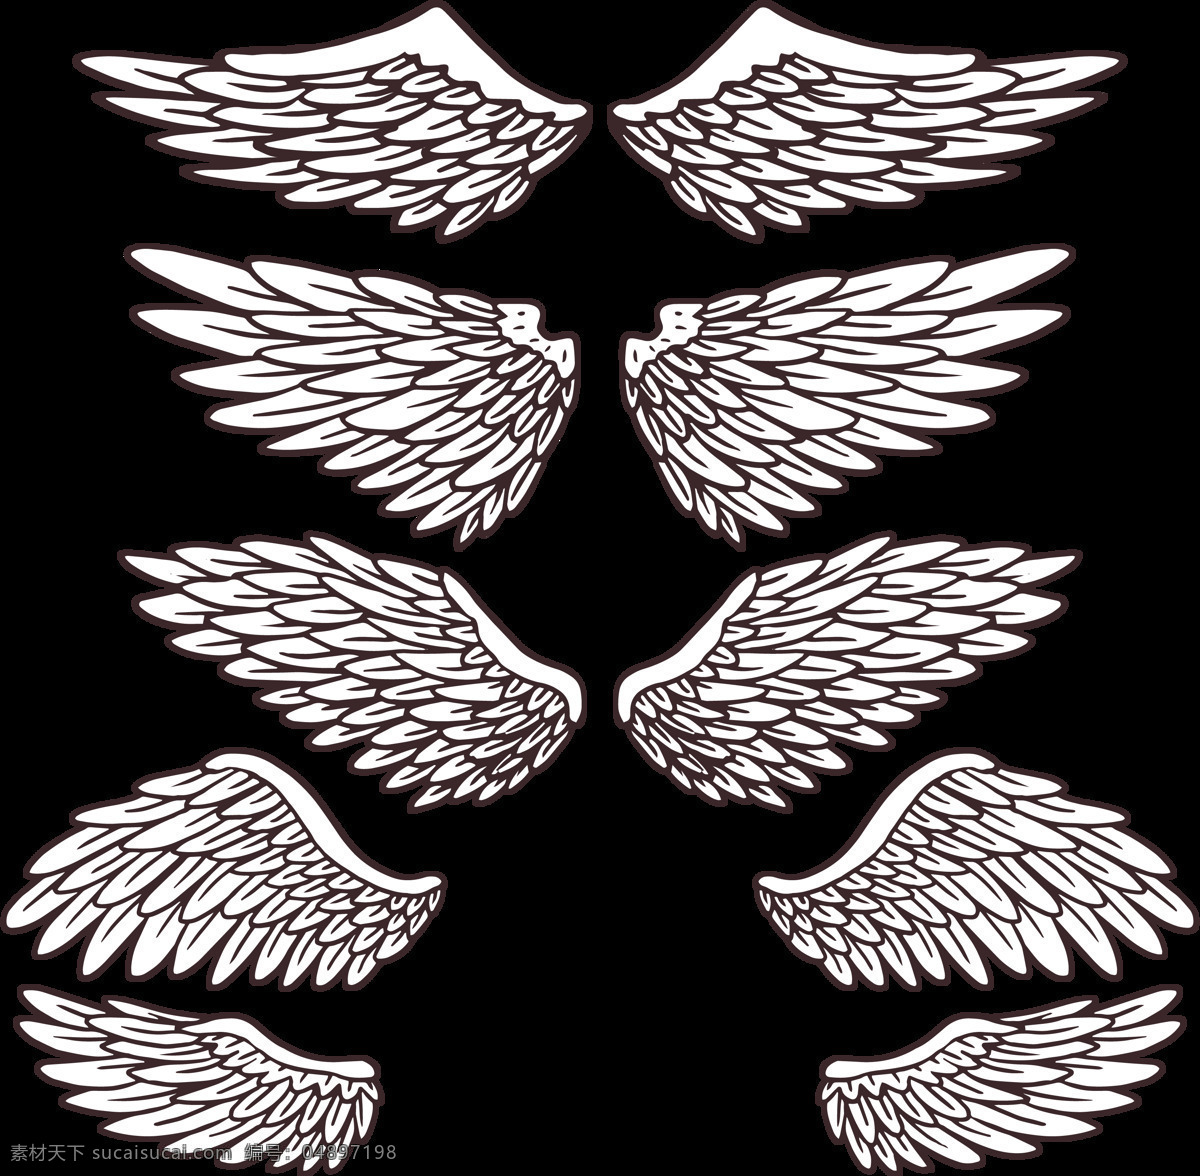 写实 风格 鸟类 翅膀 免 抠 透明 图 层 手绘翅膀 翅膀元素 小 天使 卡通翅膀 翅膀图片素材 纹身图案 翅膀素材 手绘翅膀图片